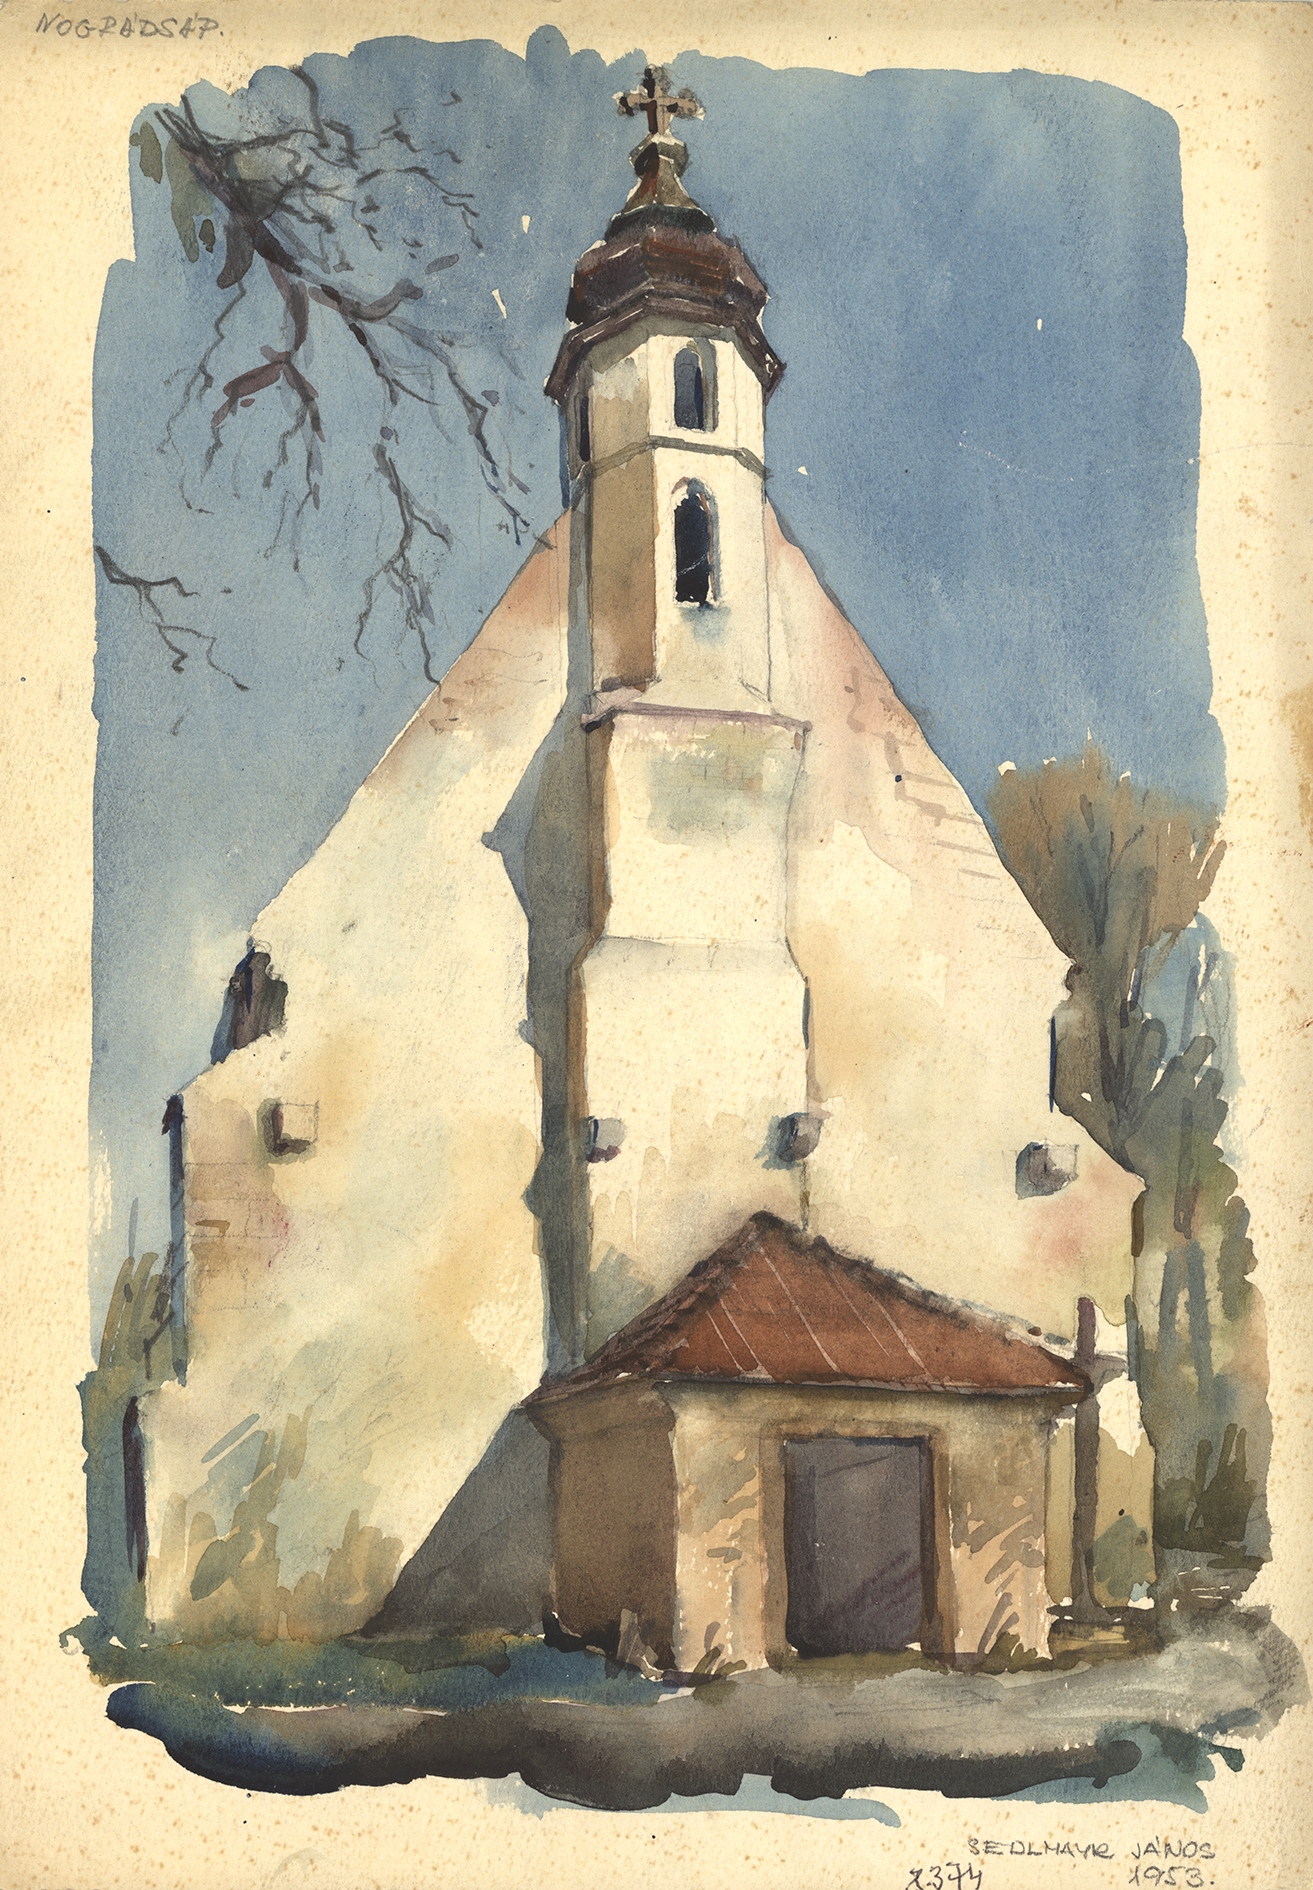 Nógrádsáp, r. k. templom, Sedlmayr János akvarellje, 1953.